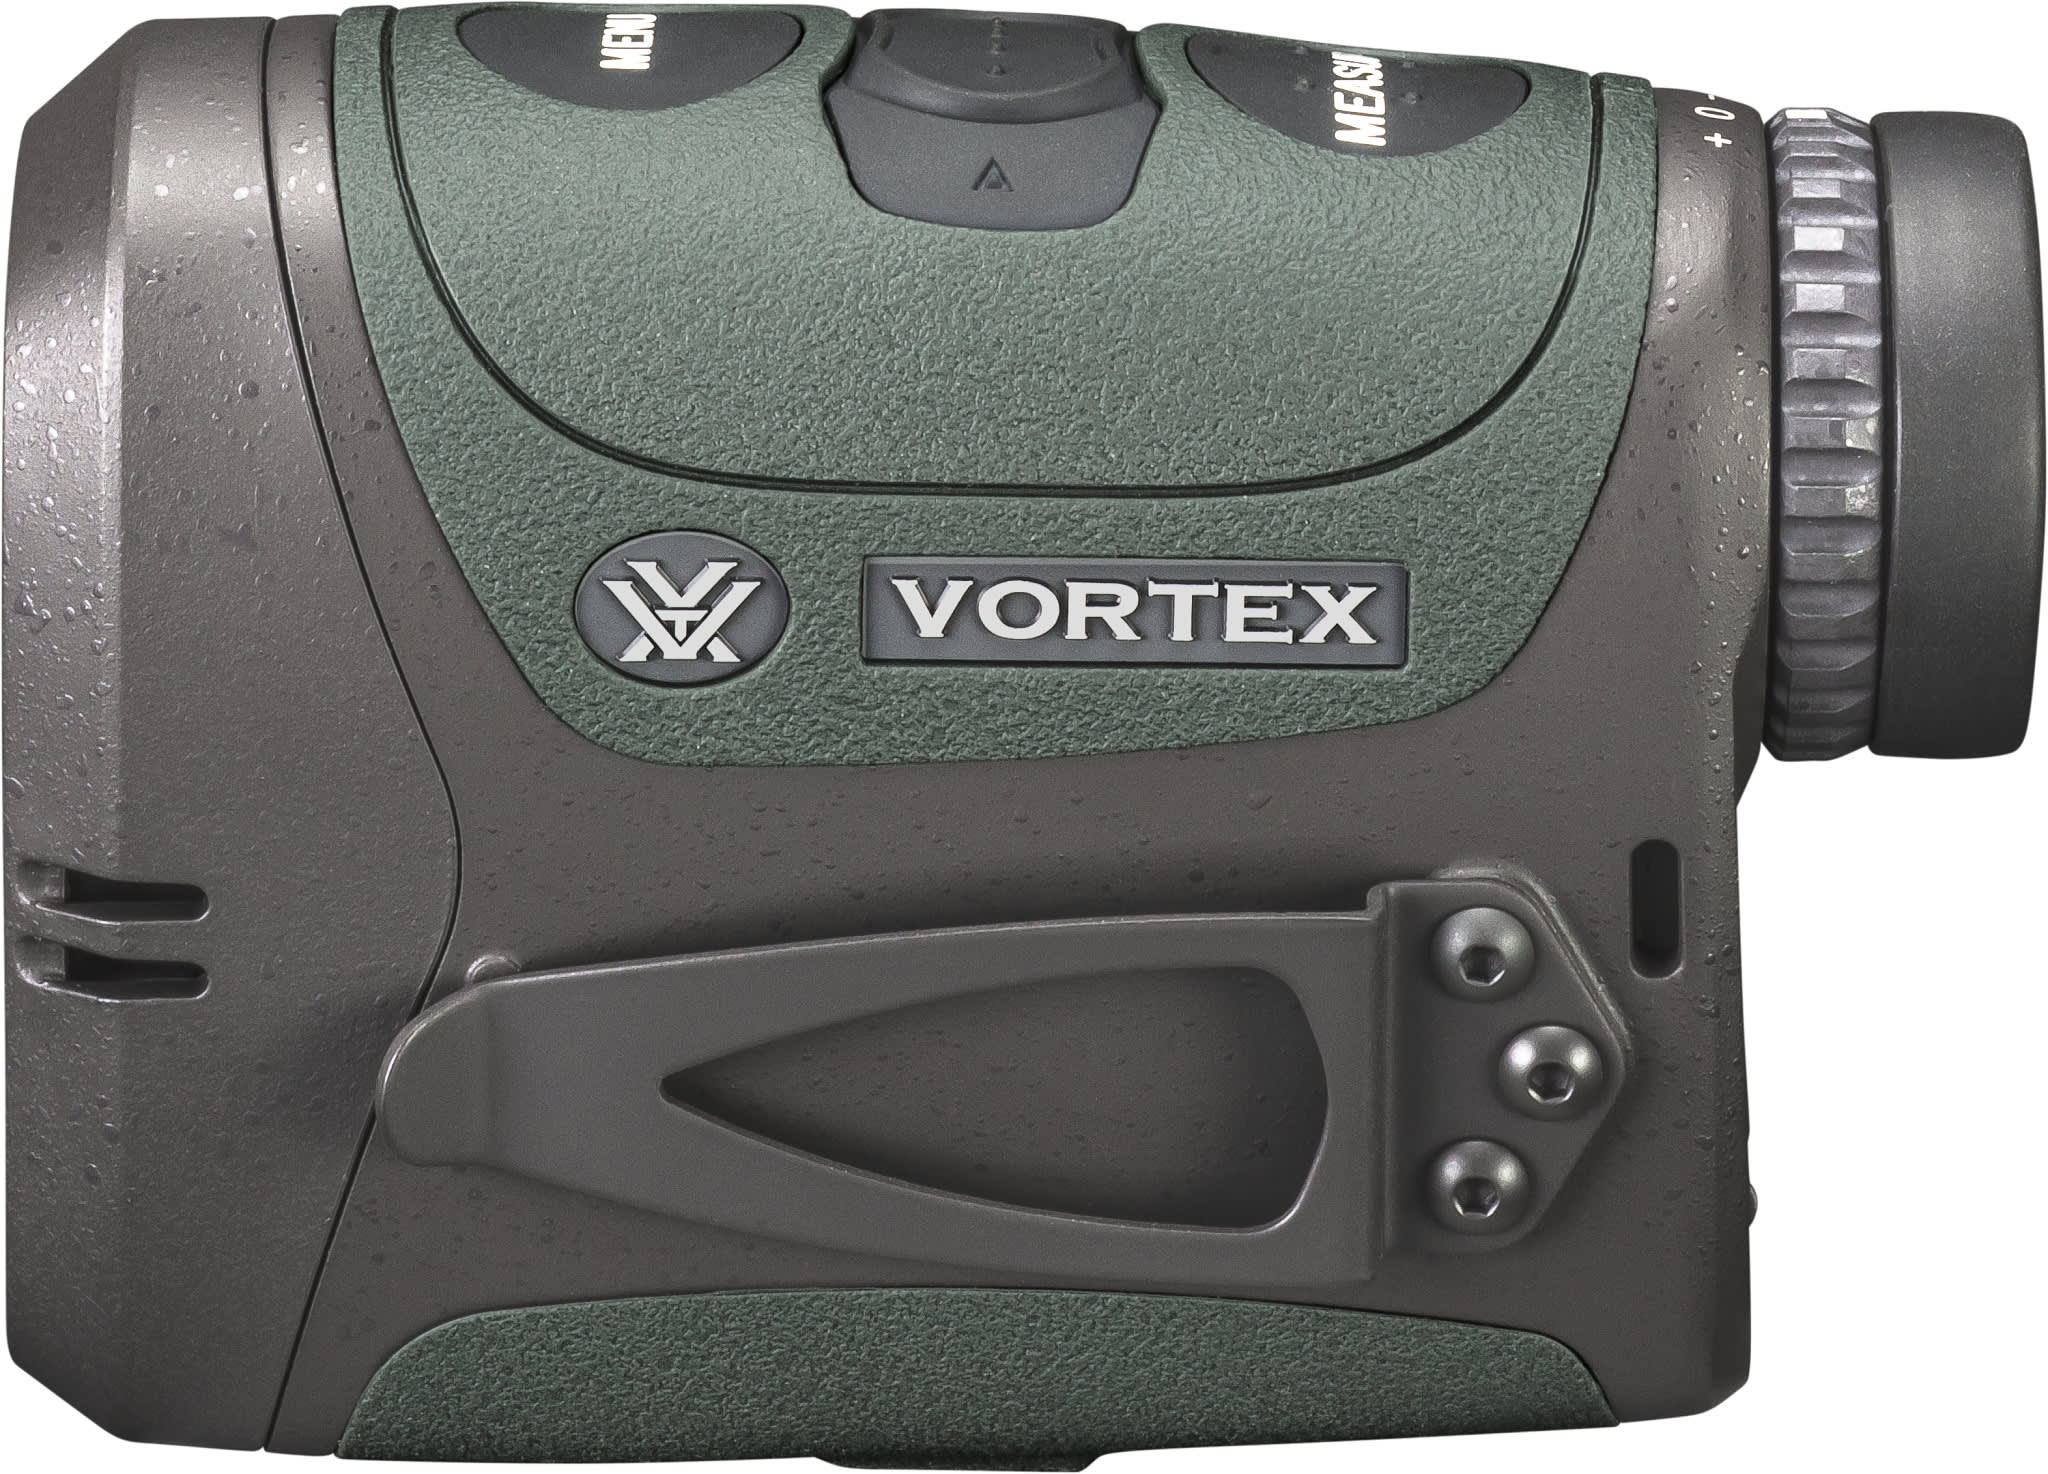 Vortex® Razor HD 4000 GeoBallistics® Rangefinder